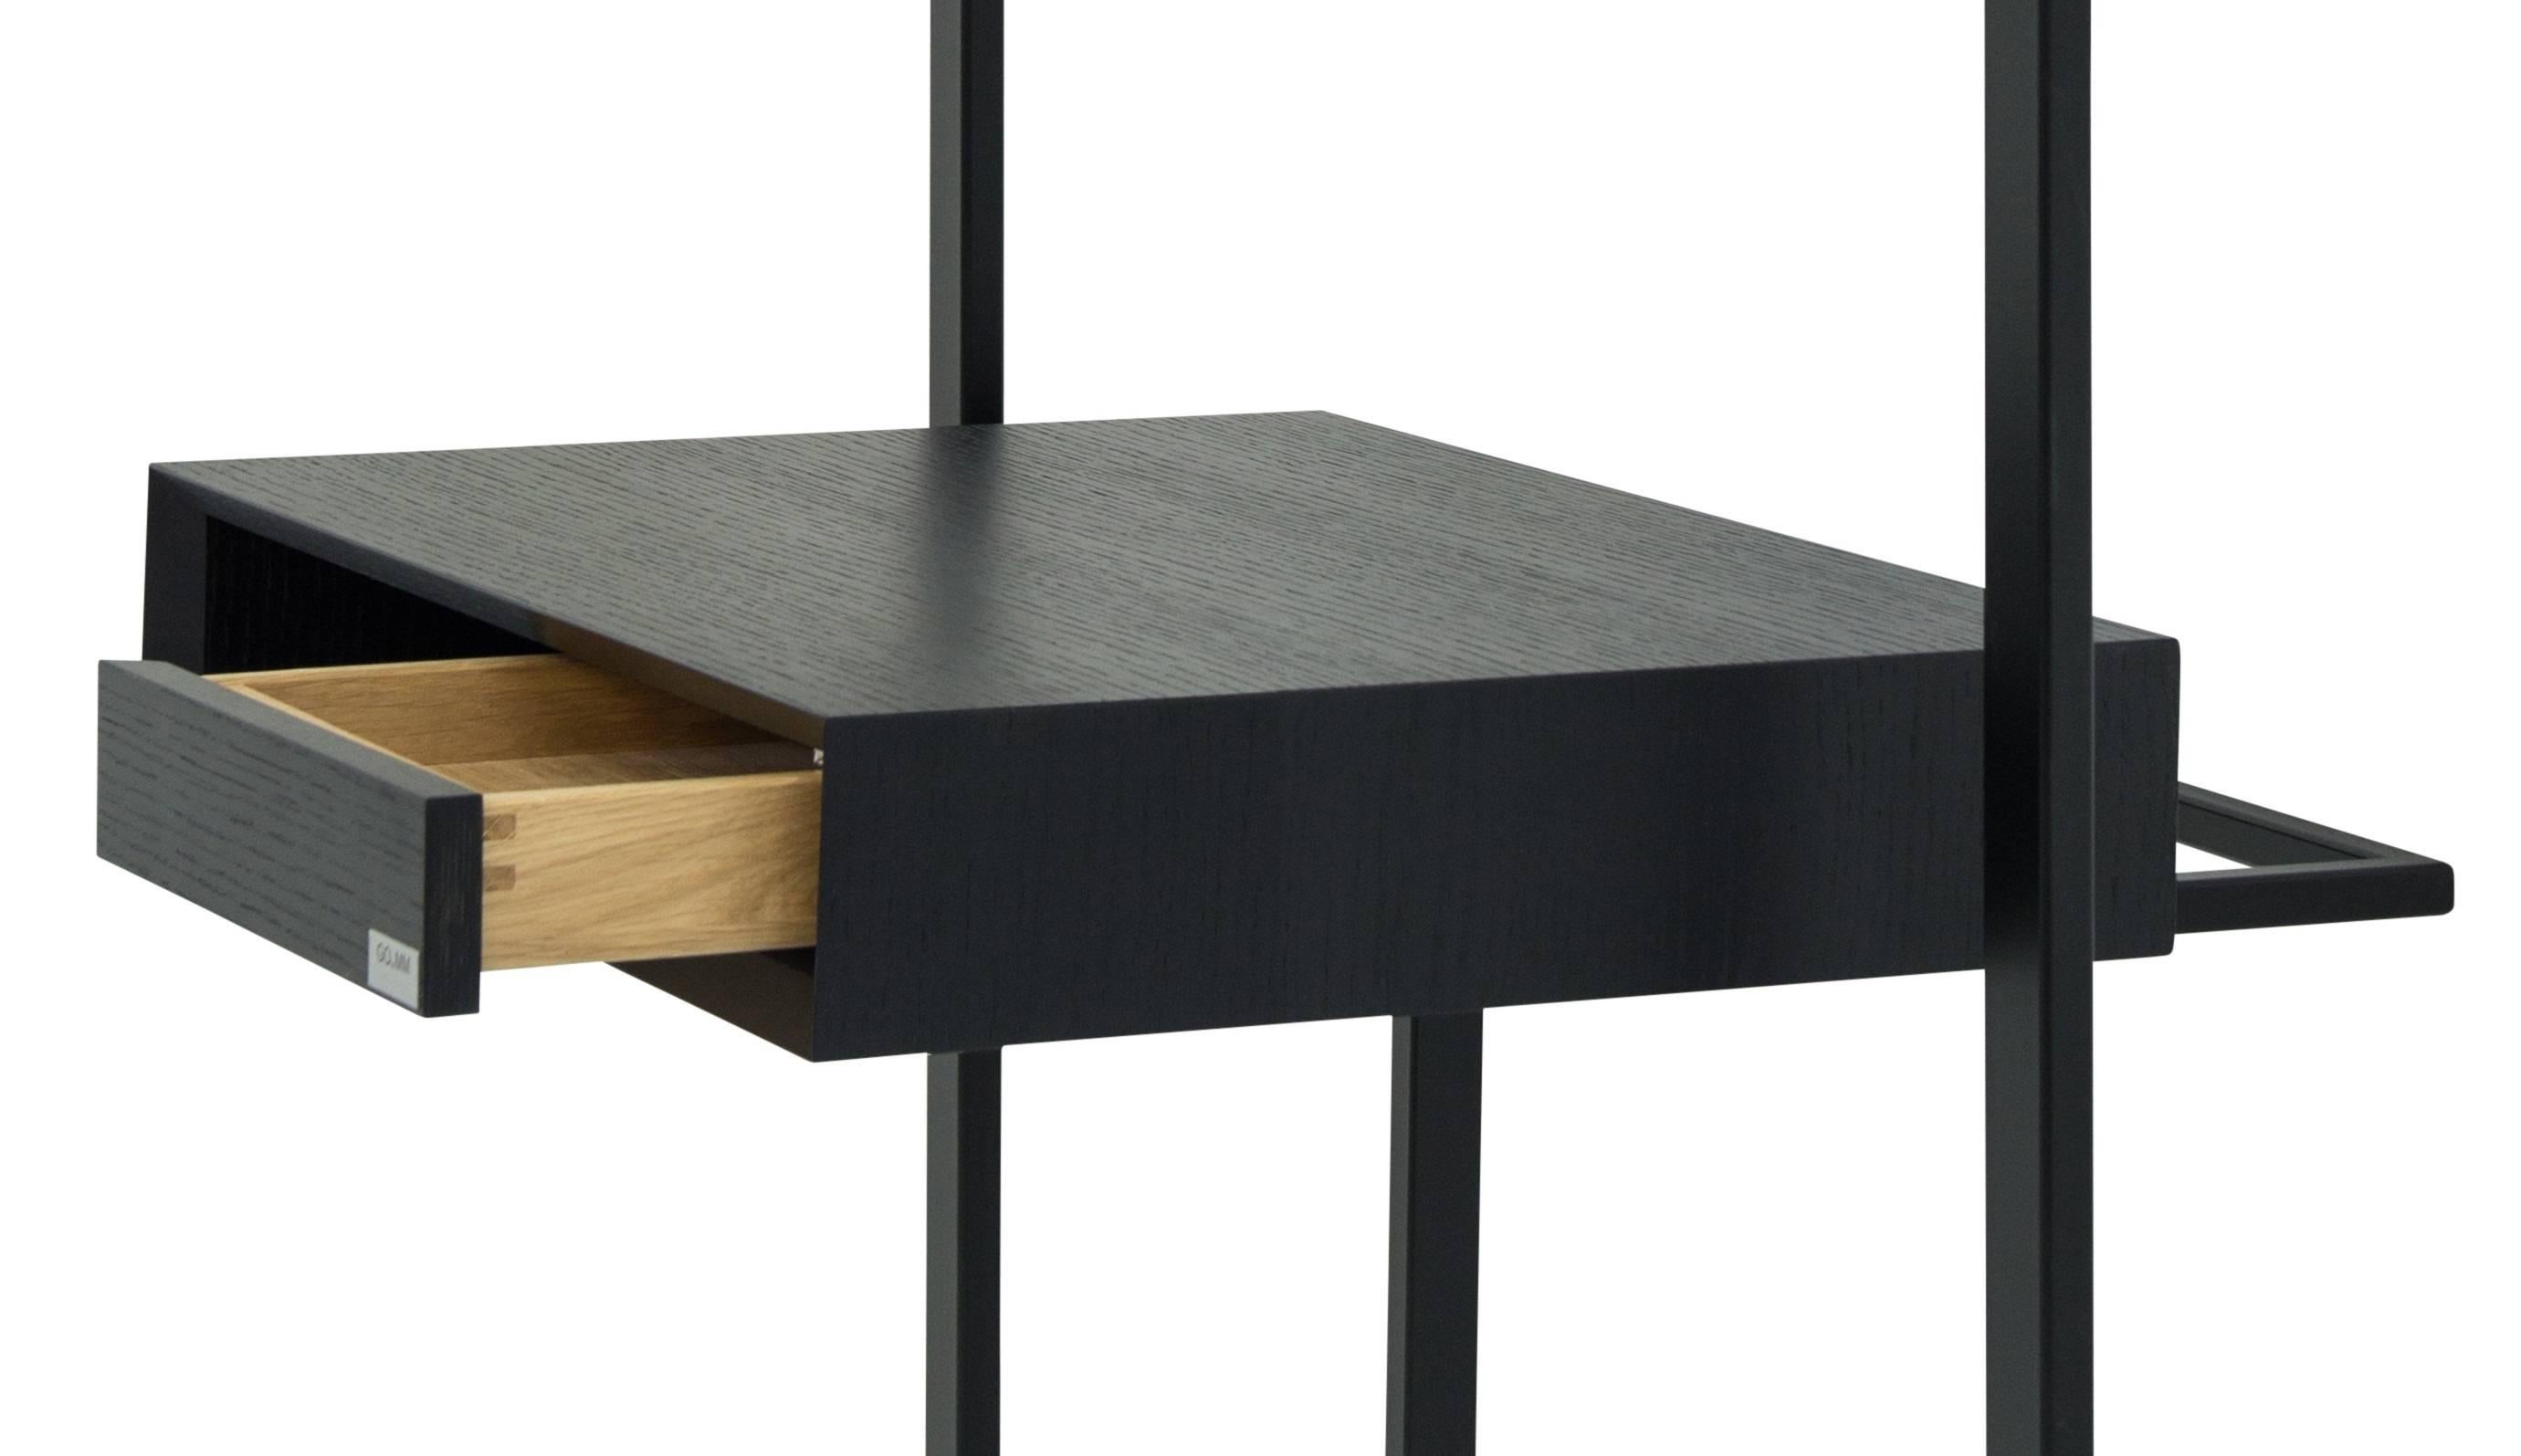 German Black Desk Secretary COM:POS:ITION 0.9  Handcrafted Contemporary Design  For Sale